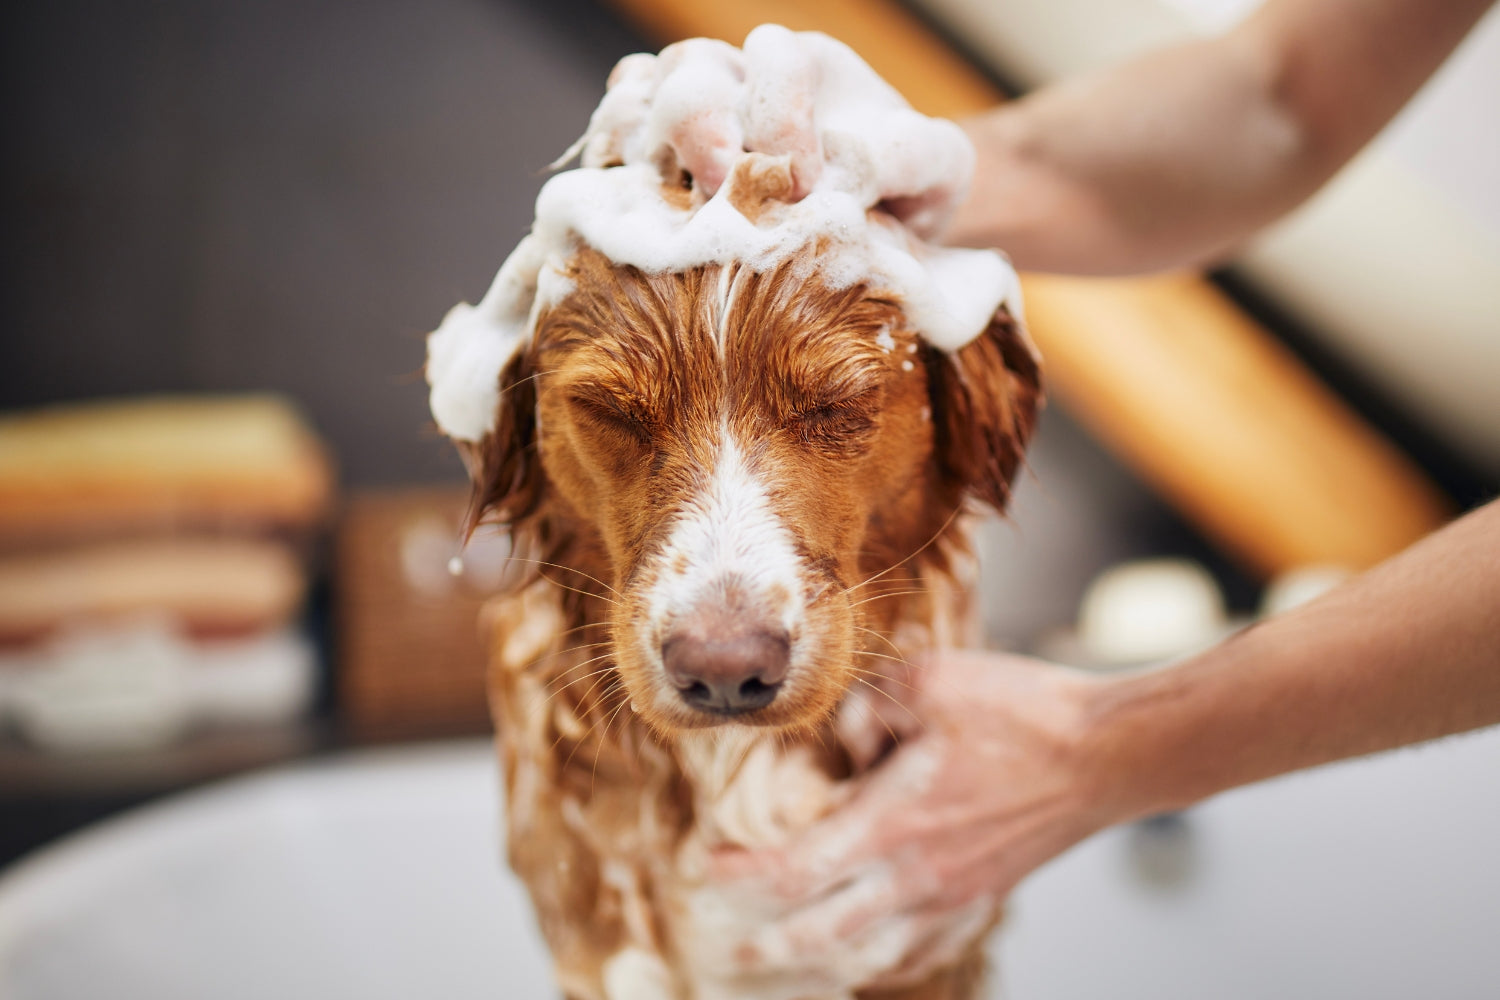 Bathing dog, how often should I bathe my dog